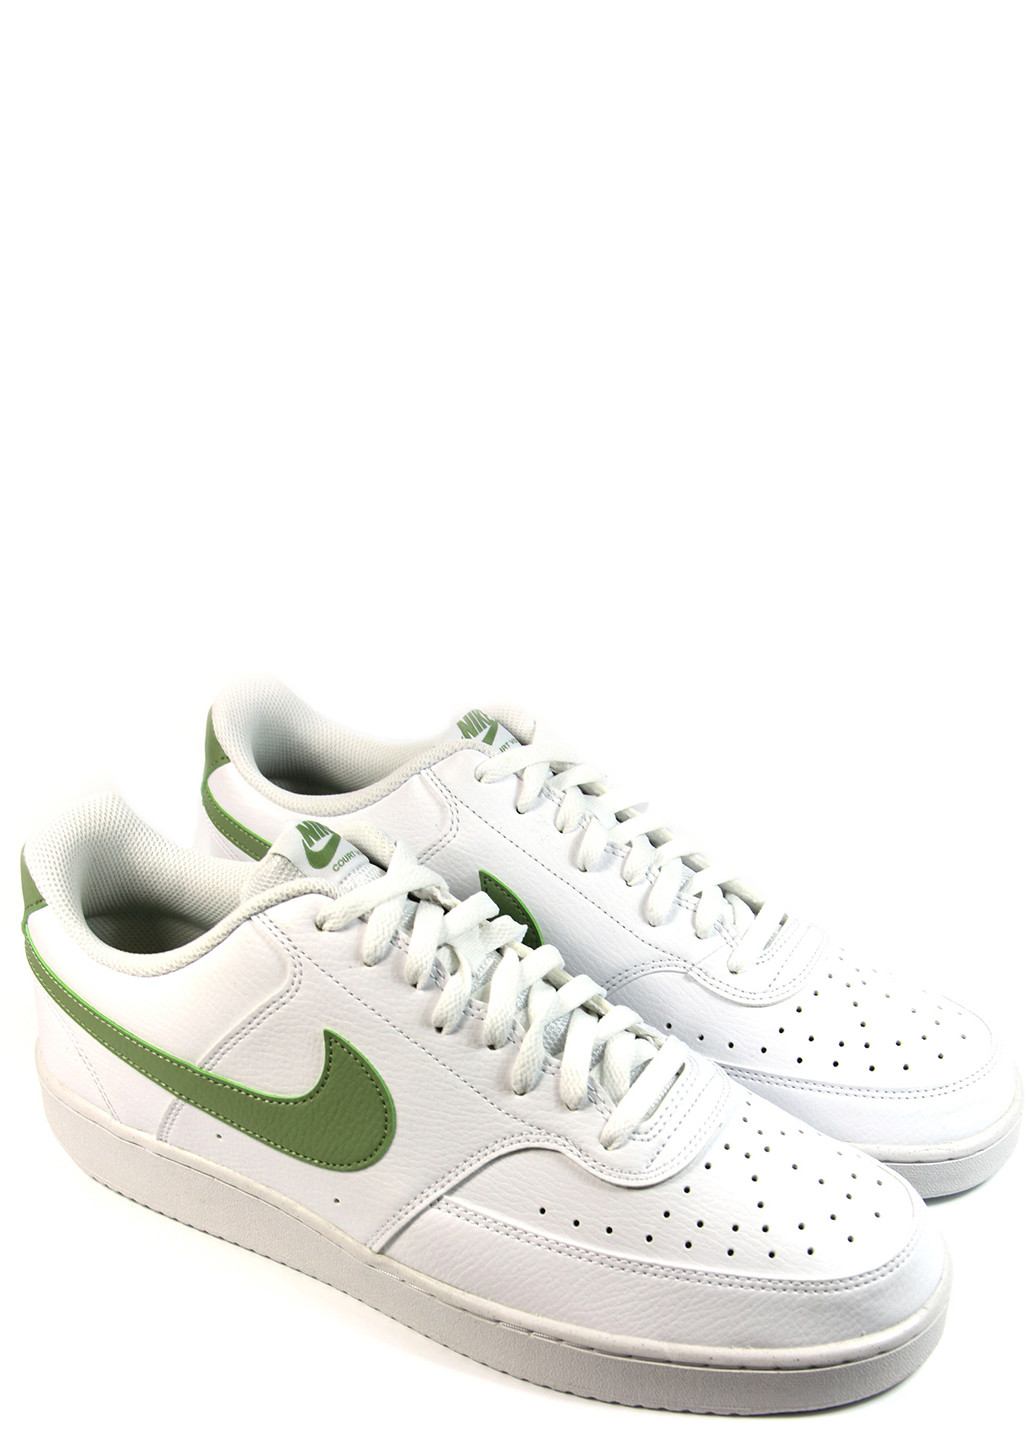 Білі Осінні чоловічі кросівки court vision low fd0781-100 Nike